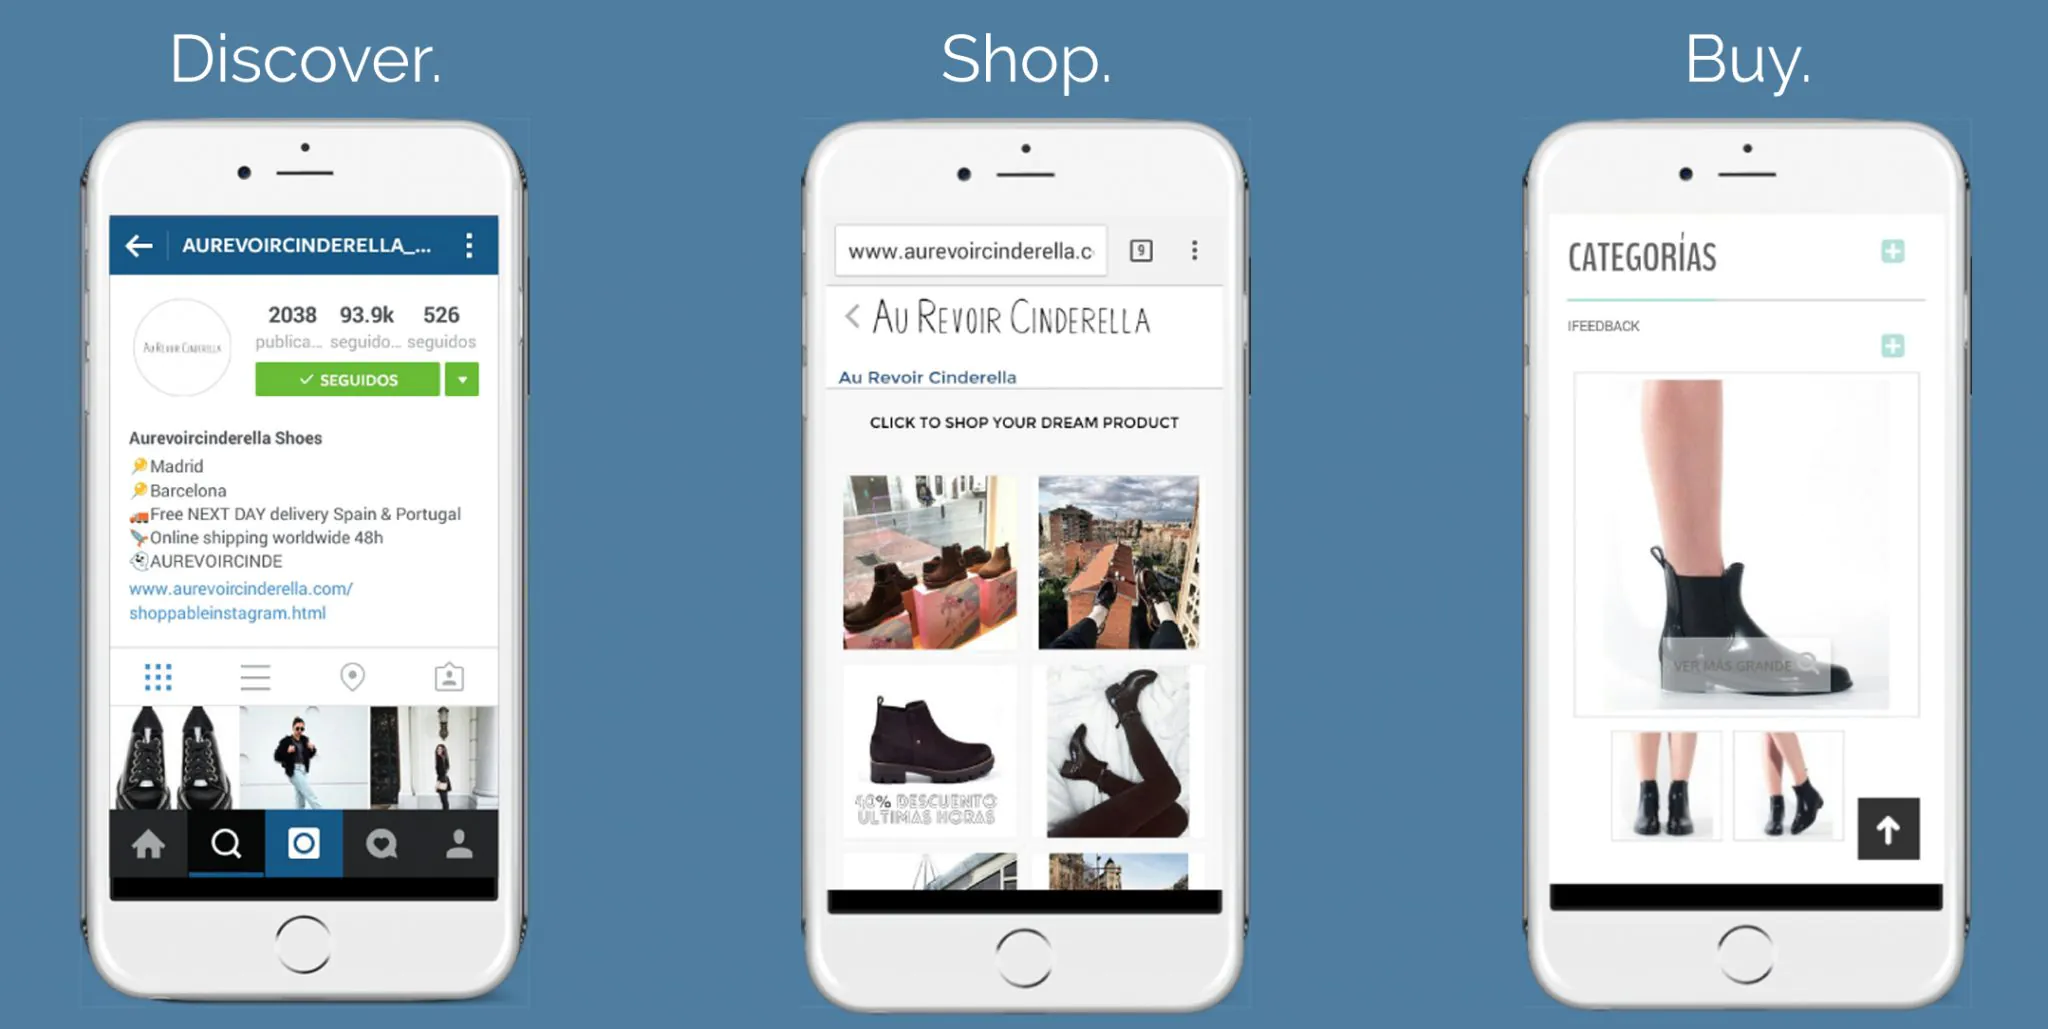 Instagram IG Shopping app